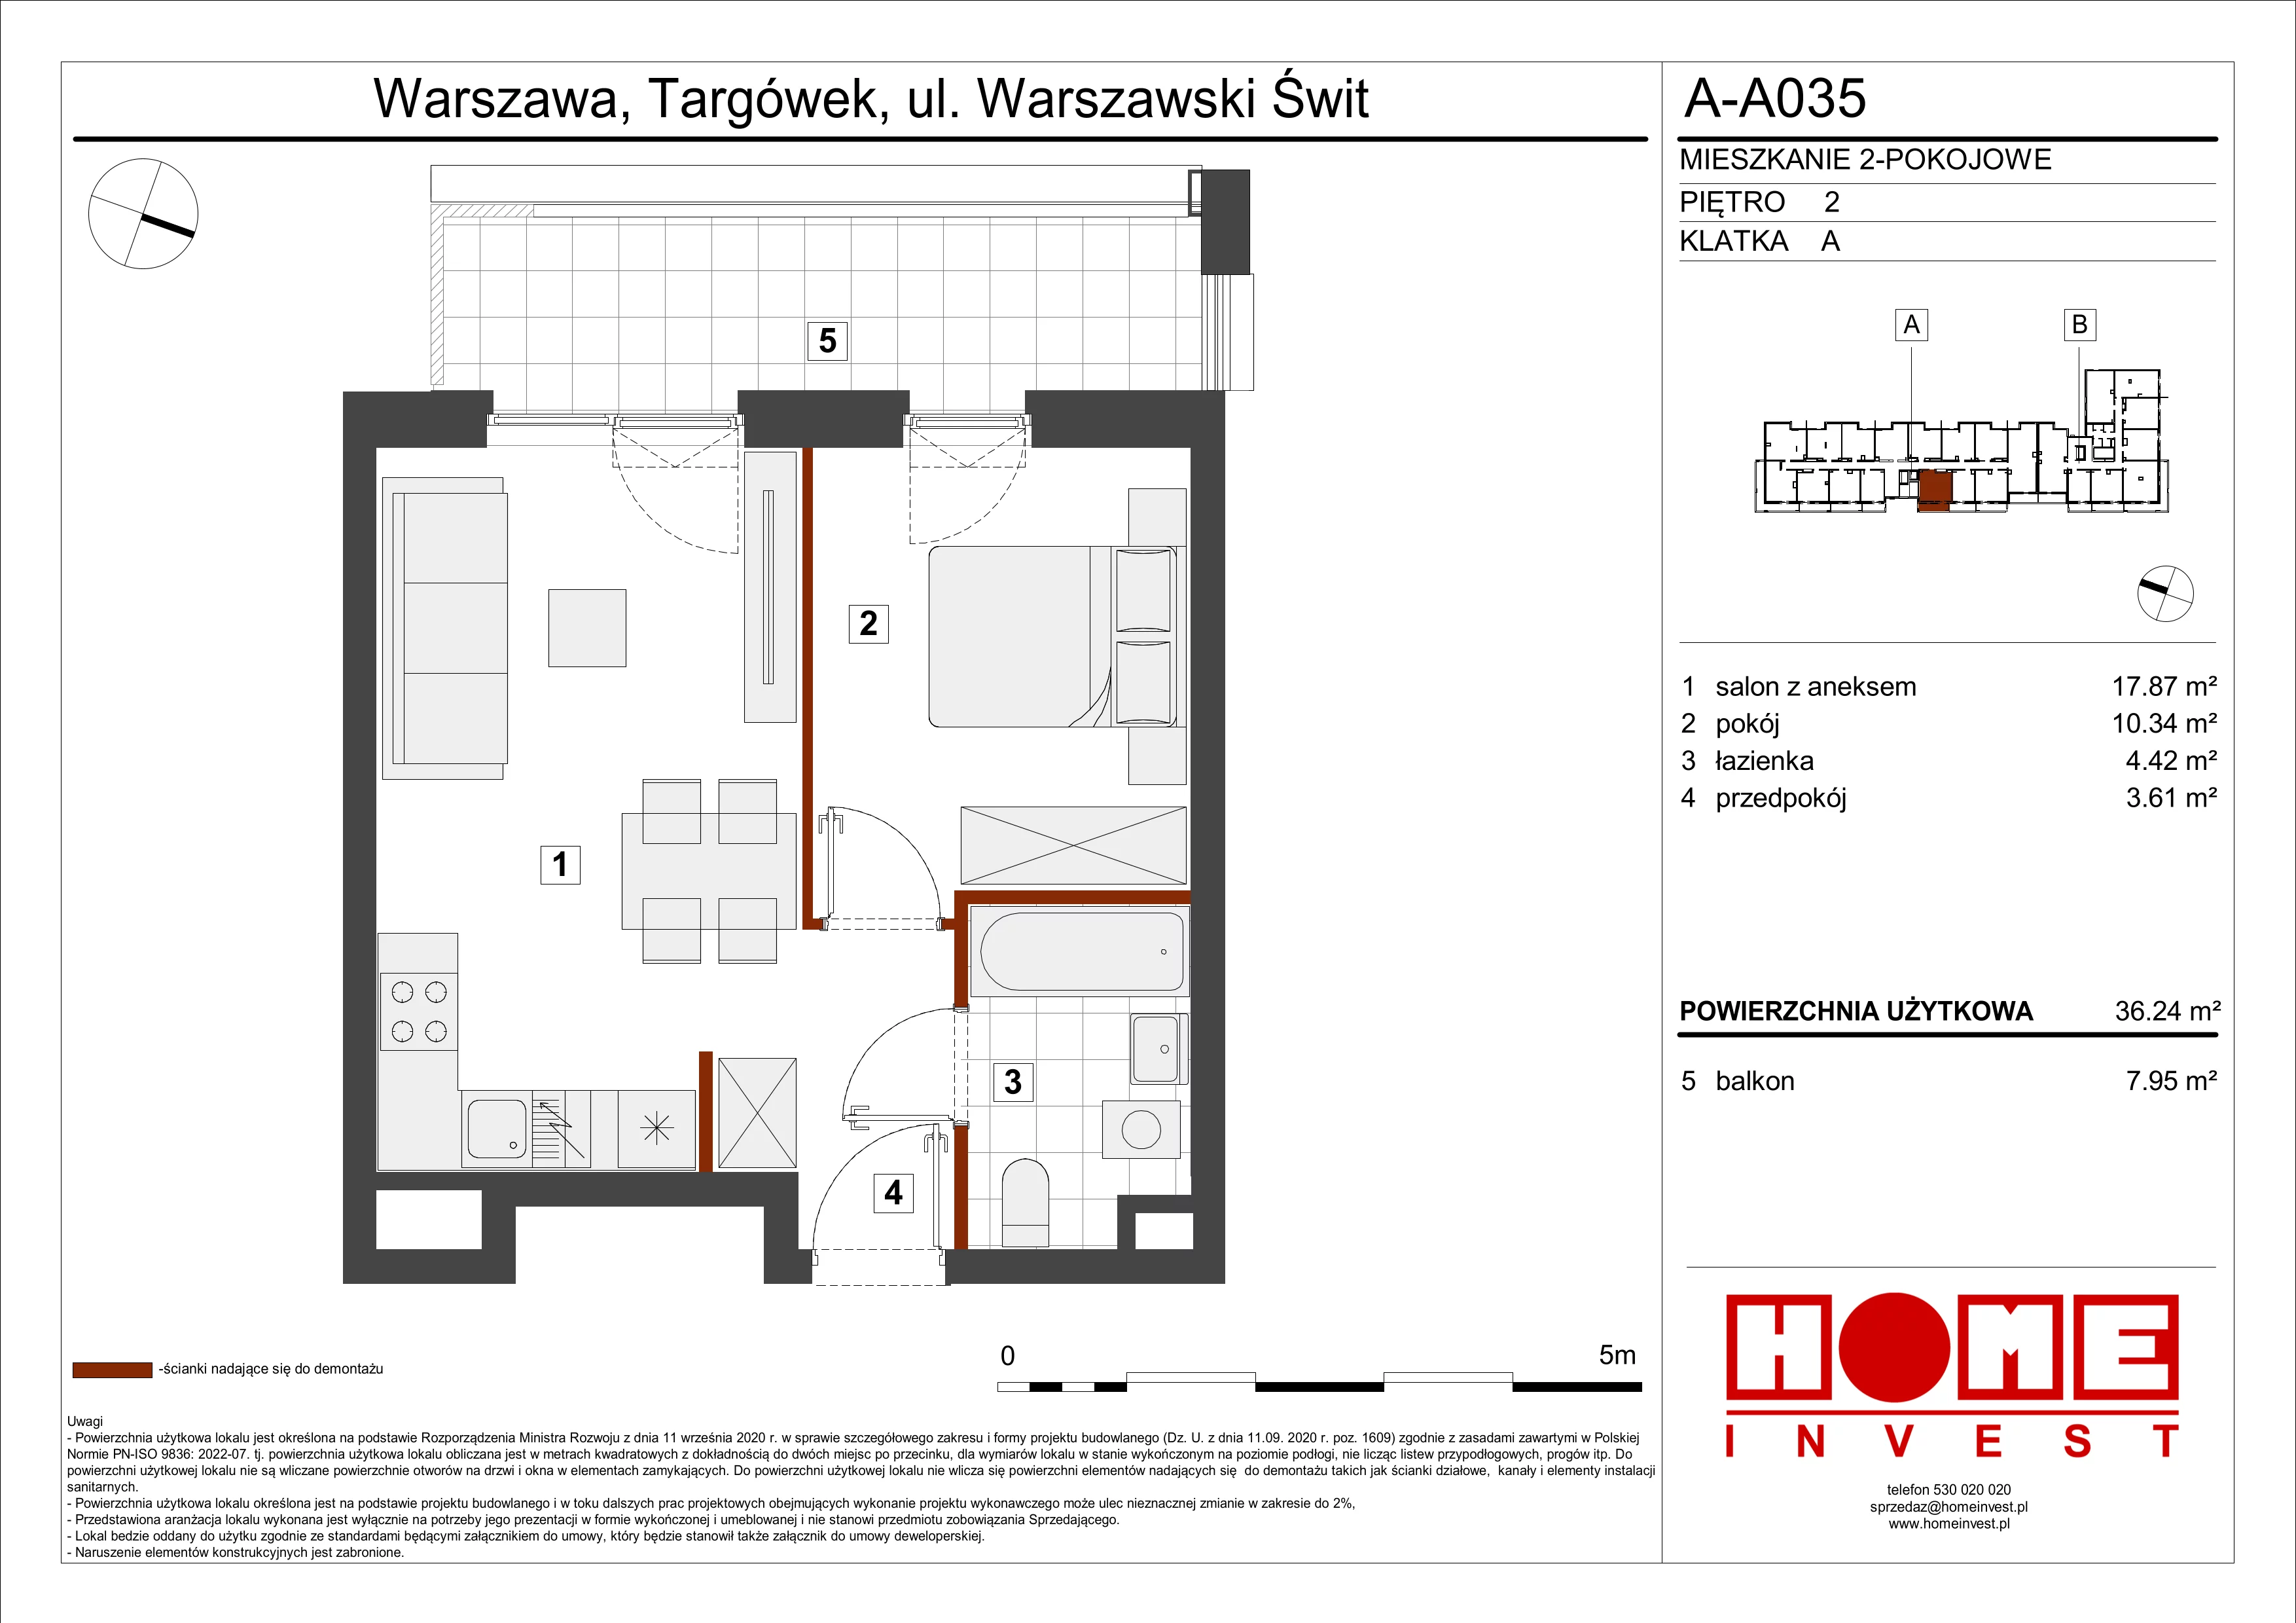 Mieszkanie 36,24 m², piętro 2, oferta nr A-A035, Warszawski Świt, Warszawa, Targówek, Bródno, ul. Warszawski Świt 5